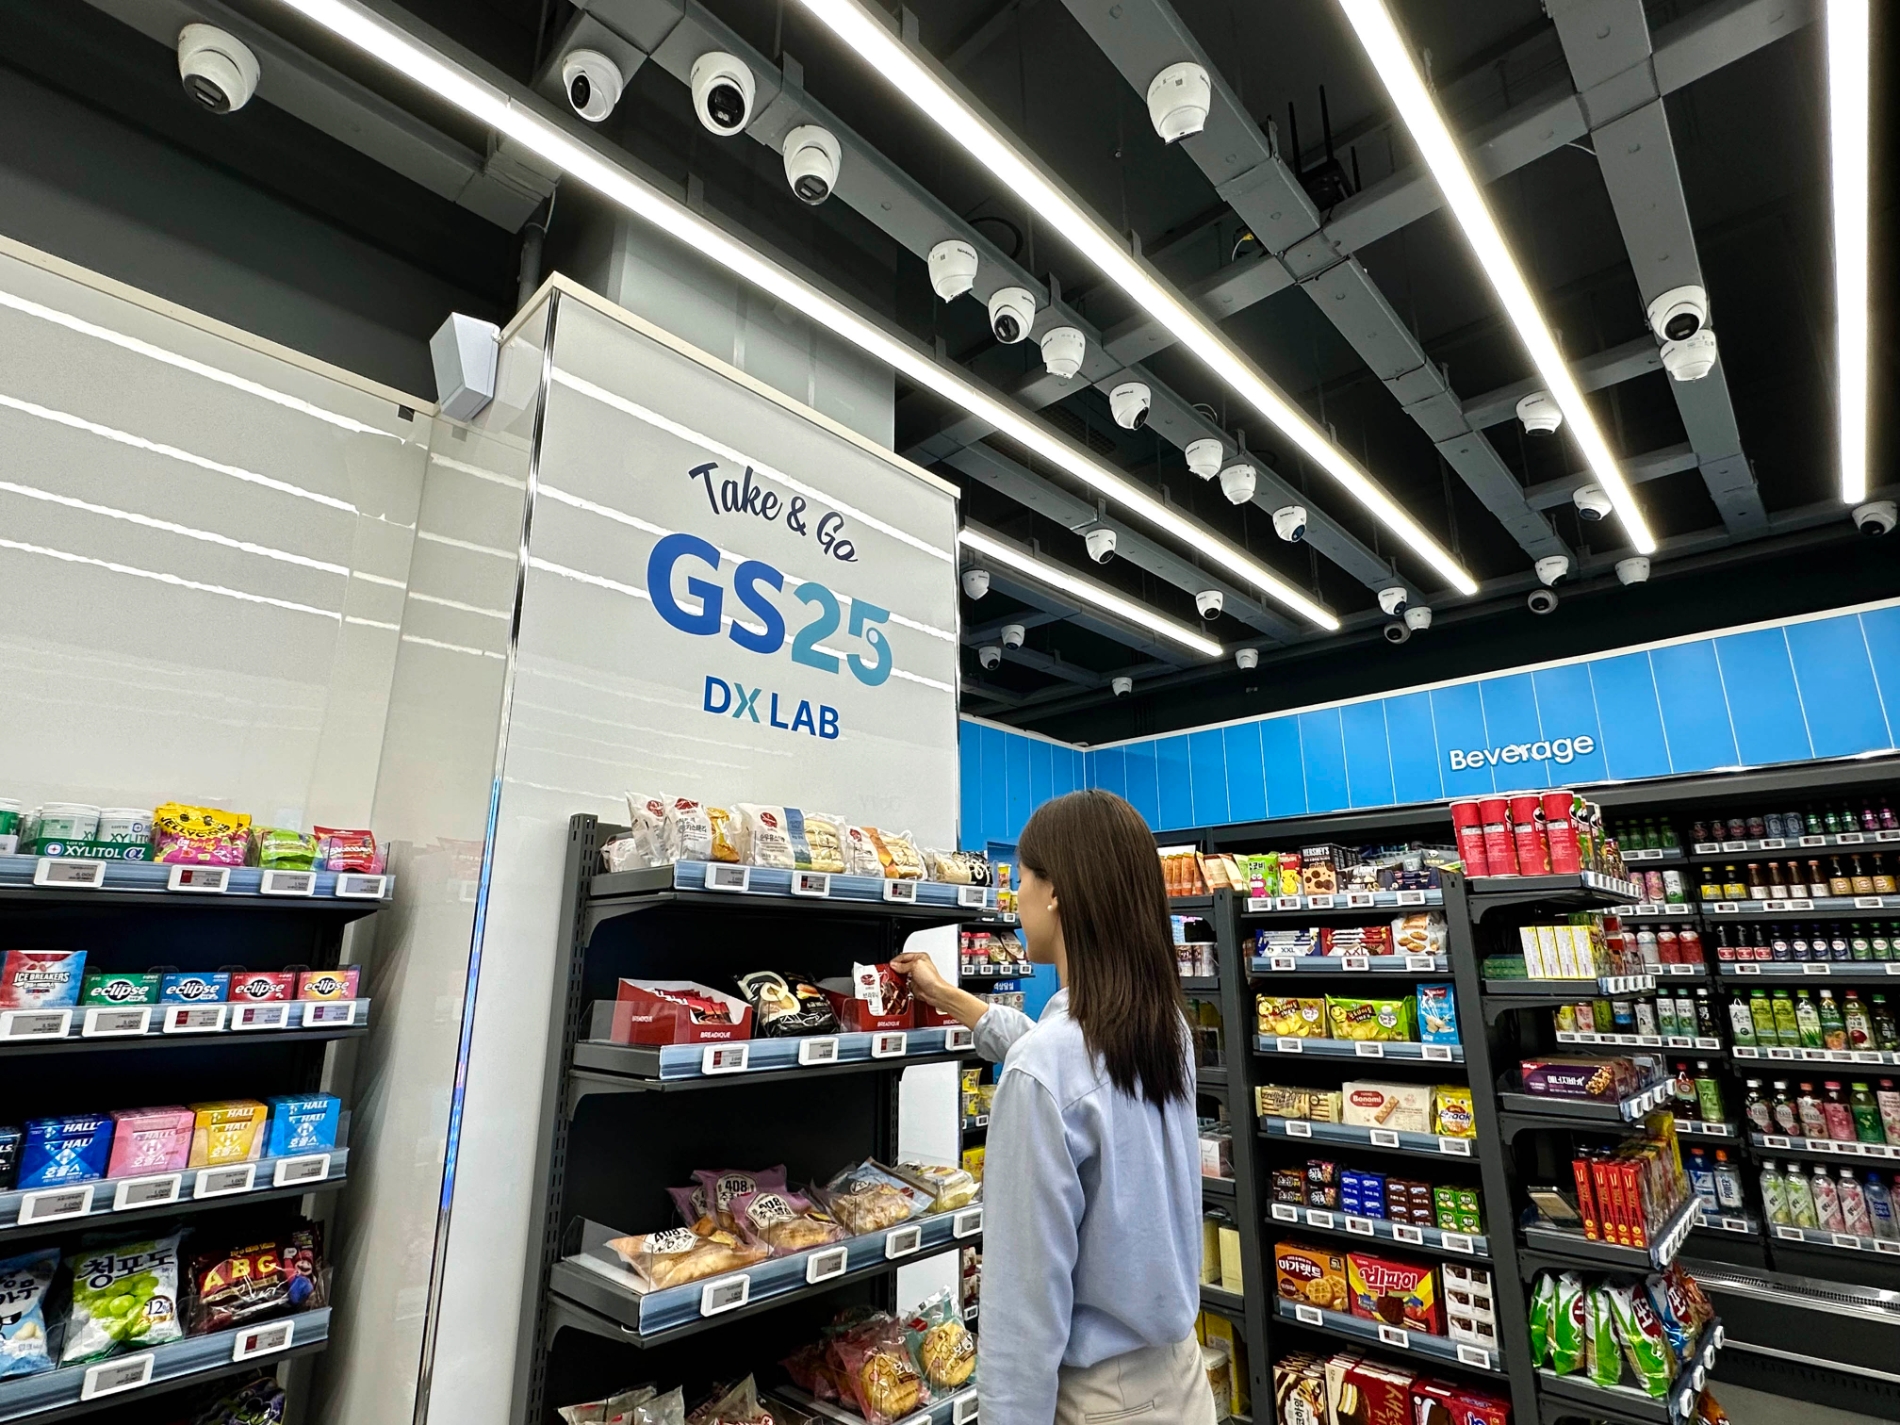 GS25 가산스마트점에서 상품을 구매하는 소비자의 모습. /사진제공=GS리테일